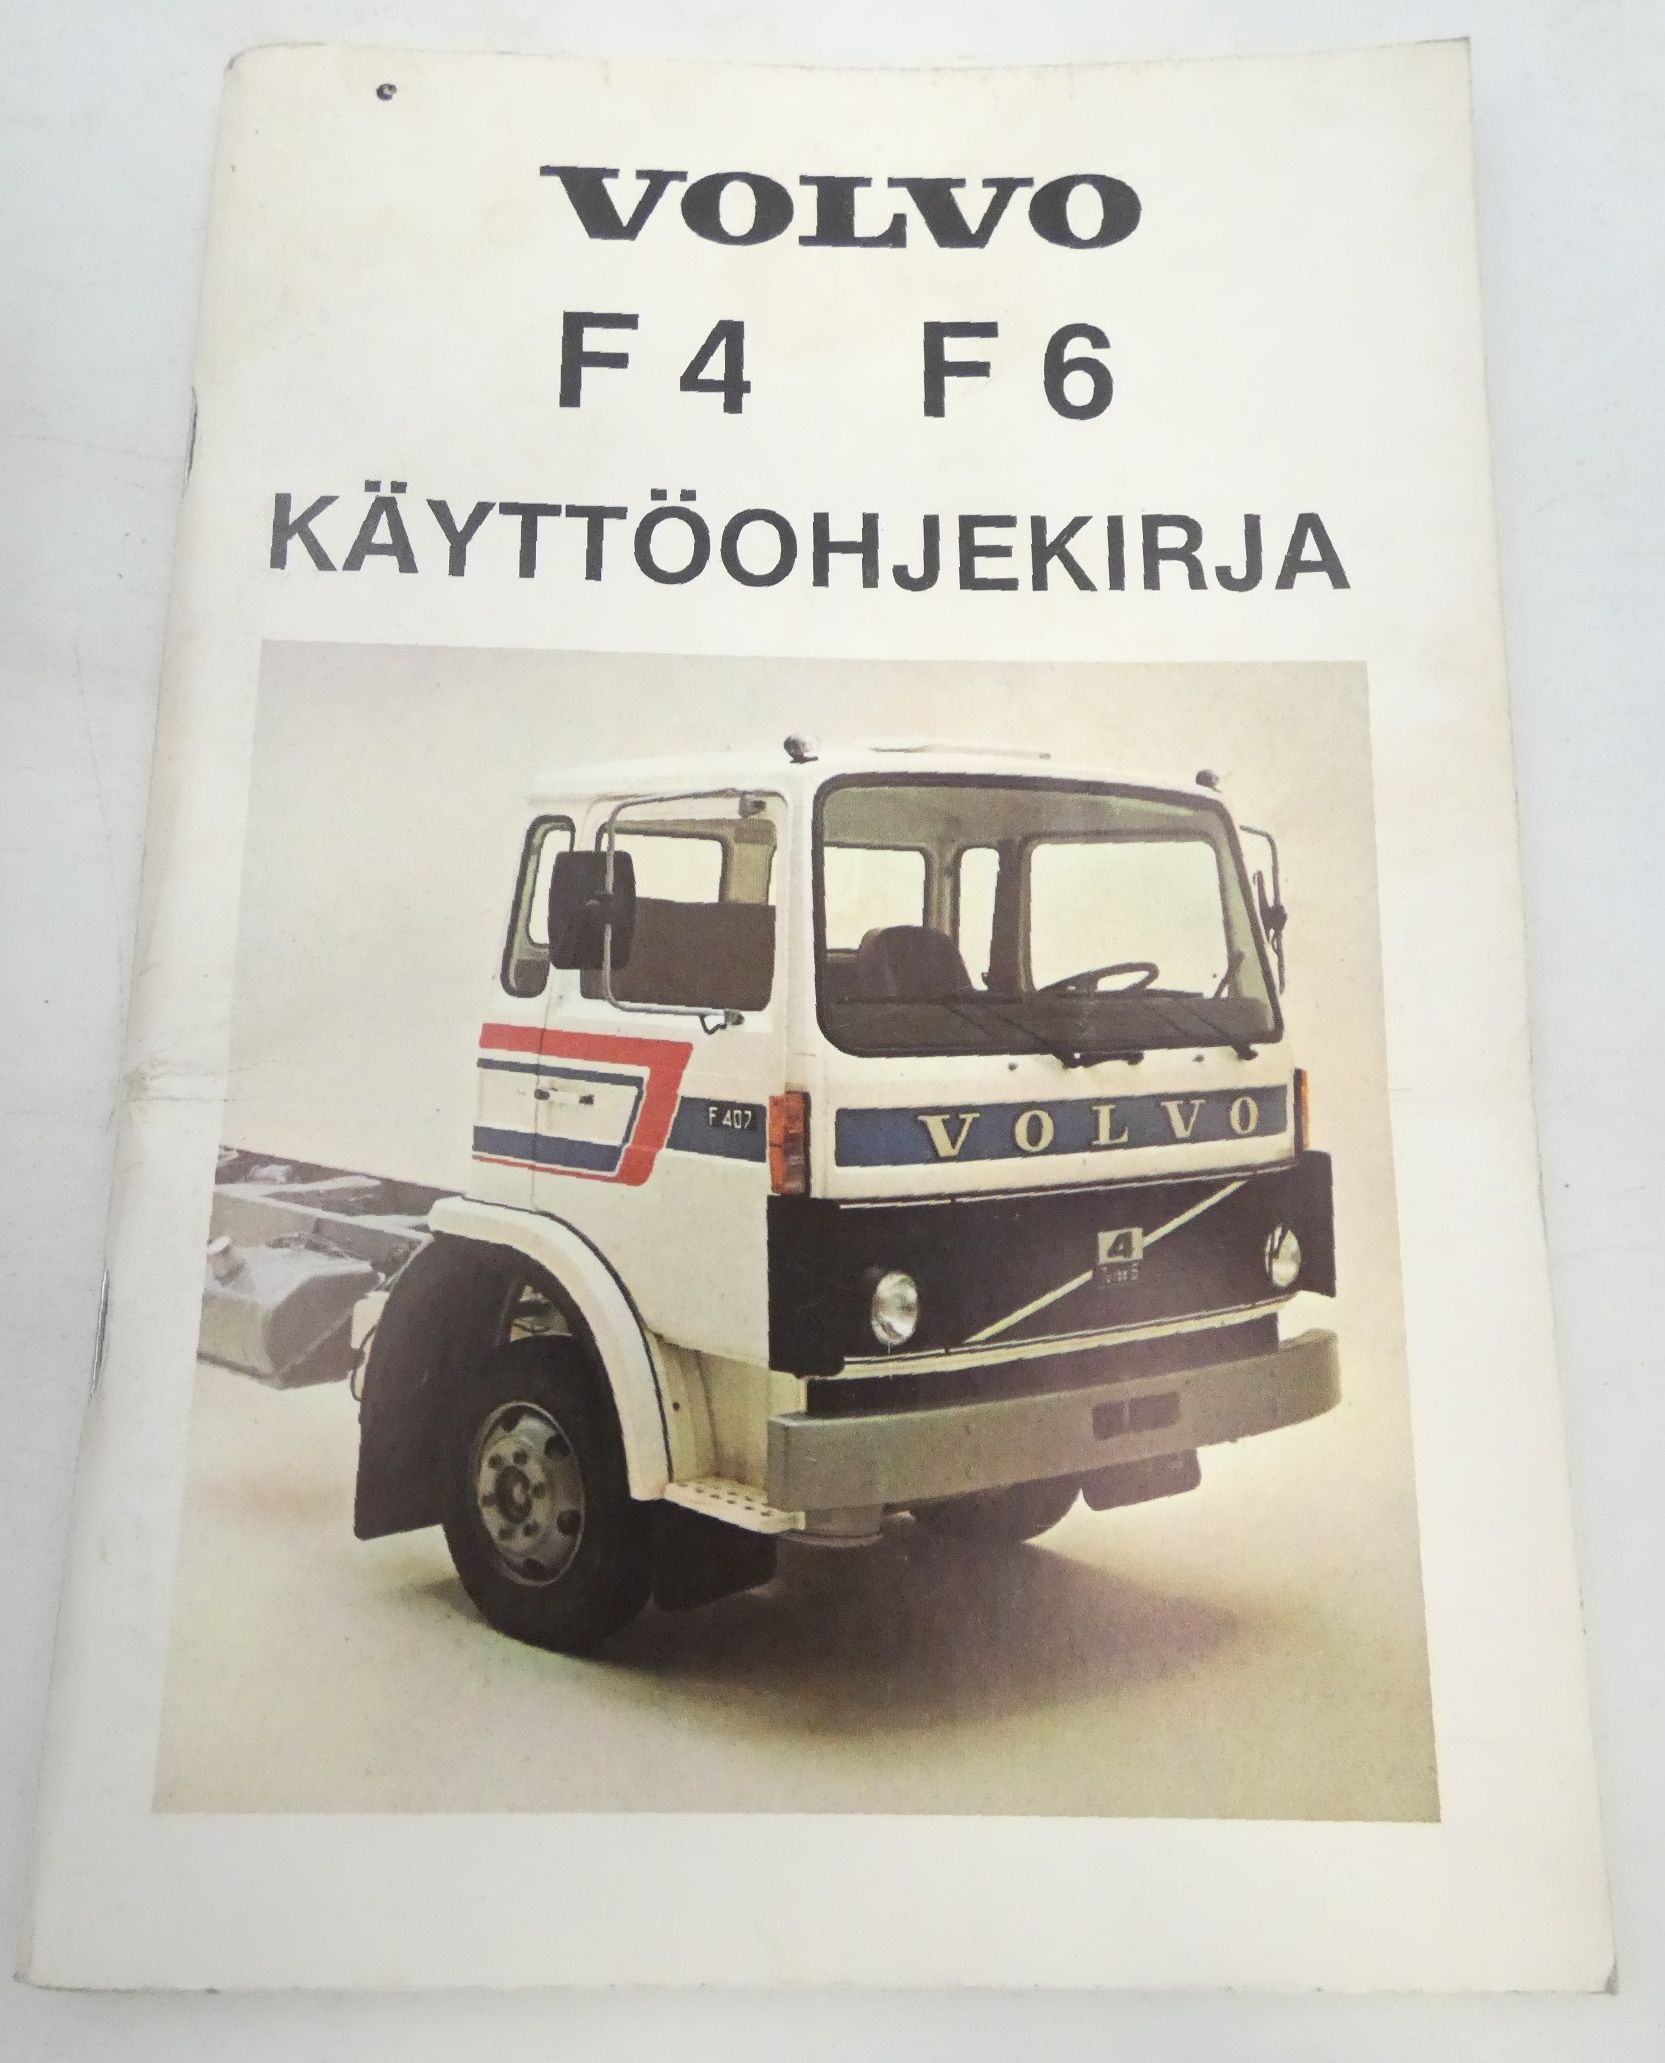 Volvo F4, F6 käyttöohjekirja